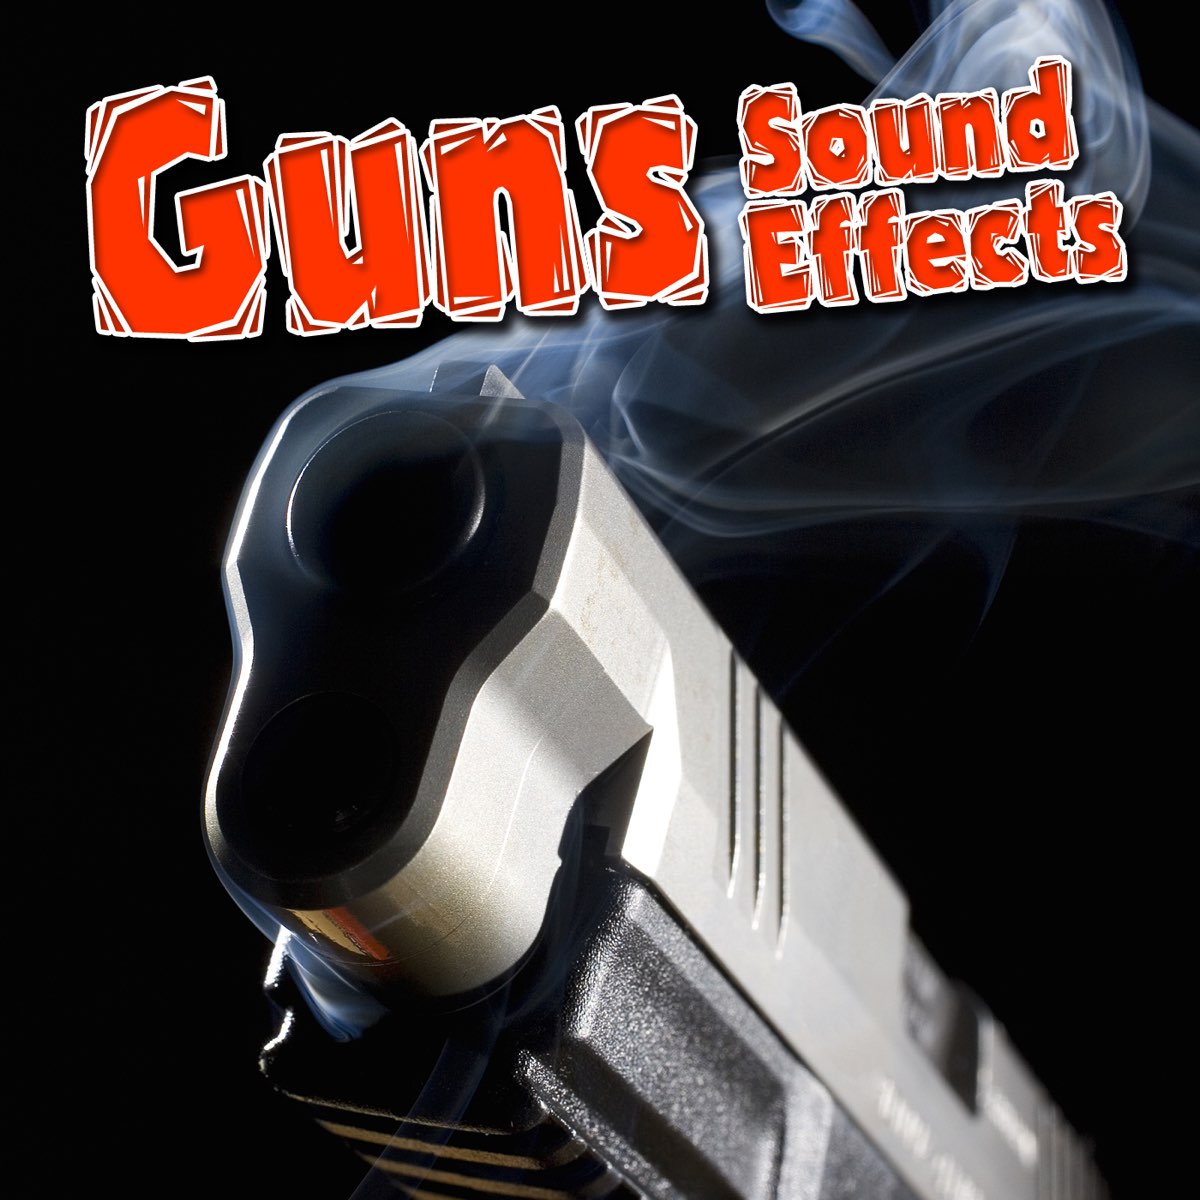 Effect mp3. Рикошет пули. Bullet Ricochet Sound. FX Laser Gun. Super Sound Gun музыкальный.